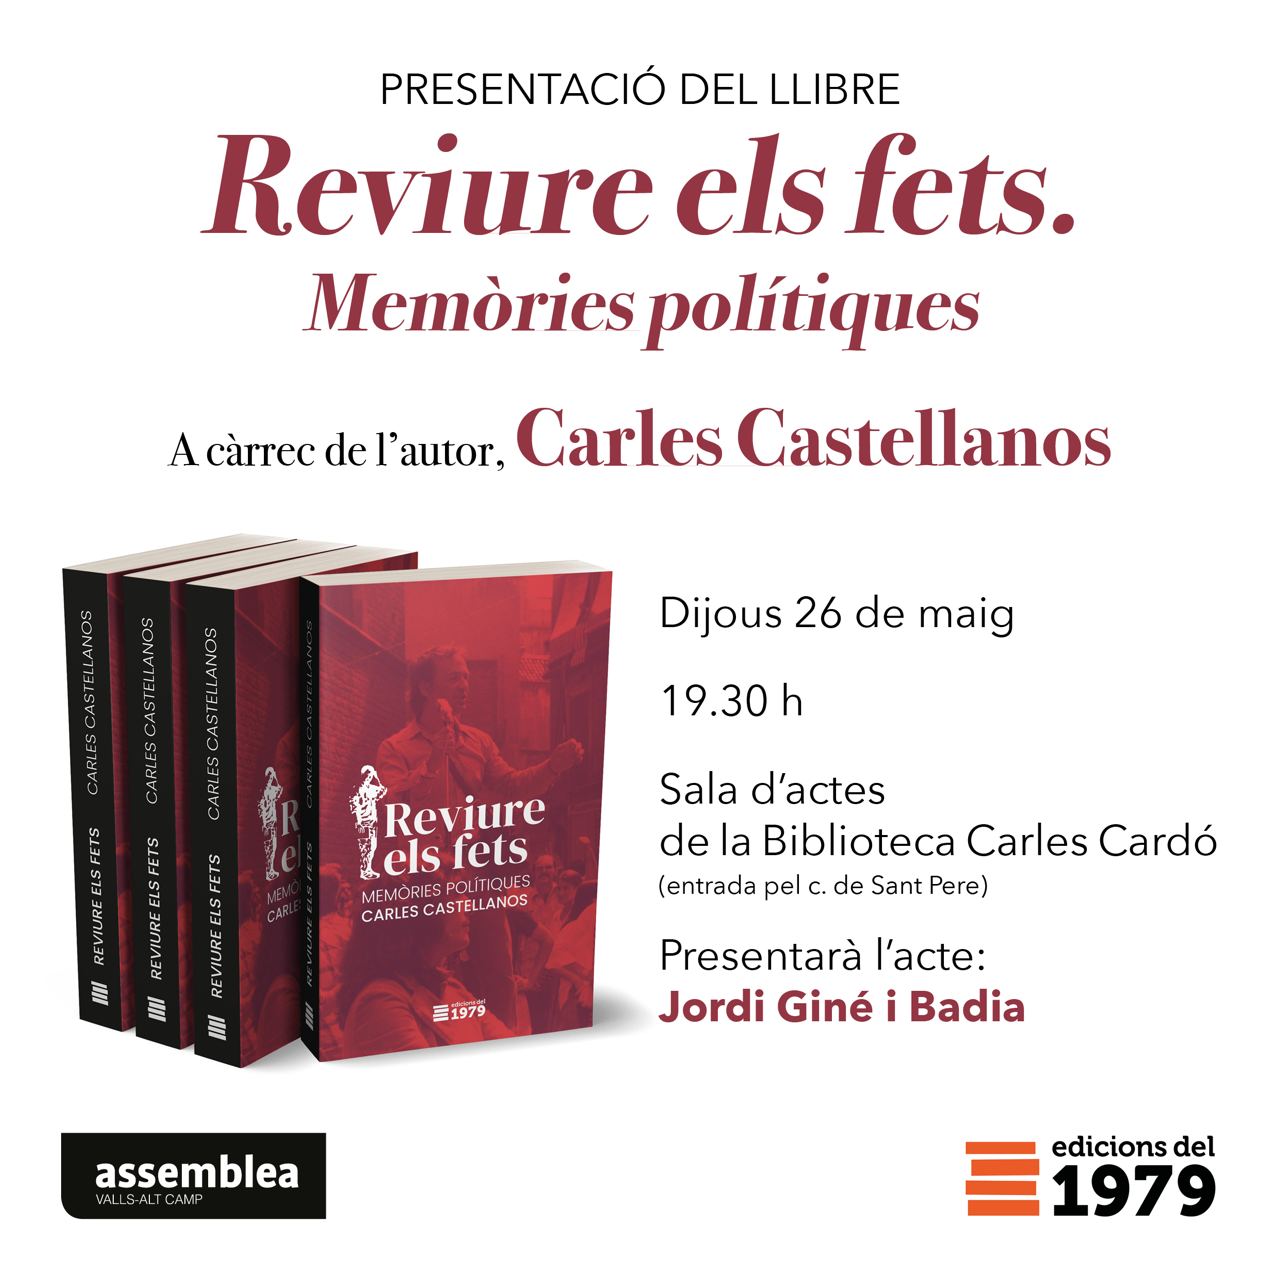 Presentació del llibre: Reviure els Fets. Memòries Polítiques. Carles Castellanos